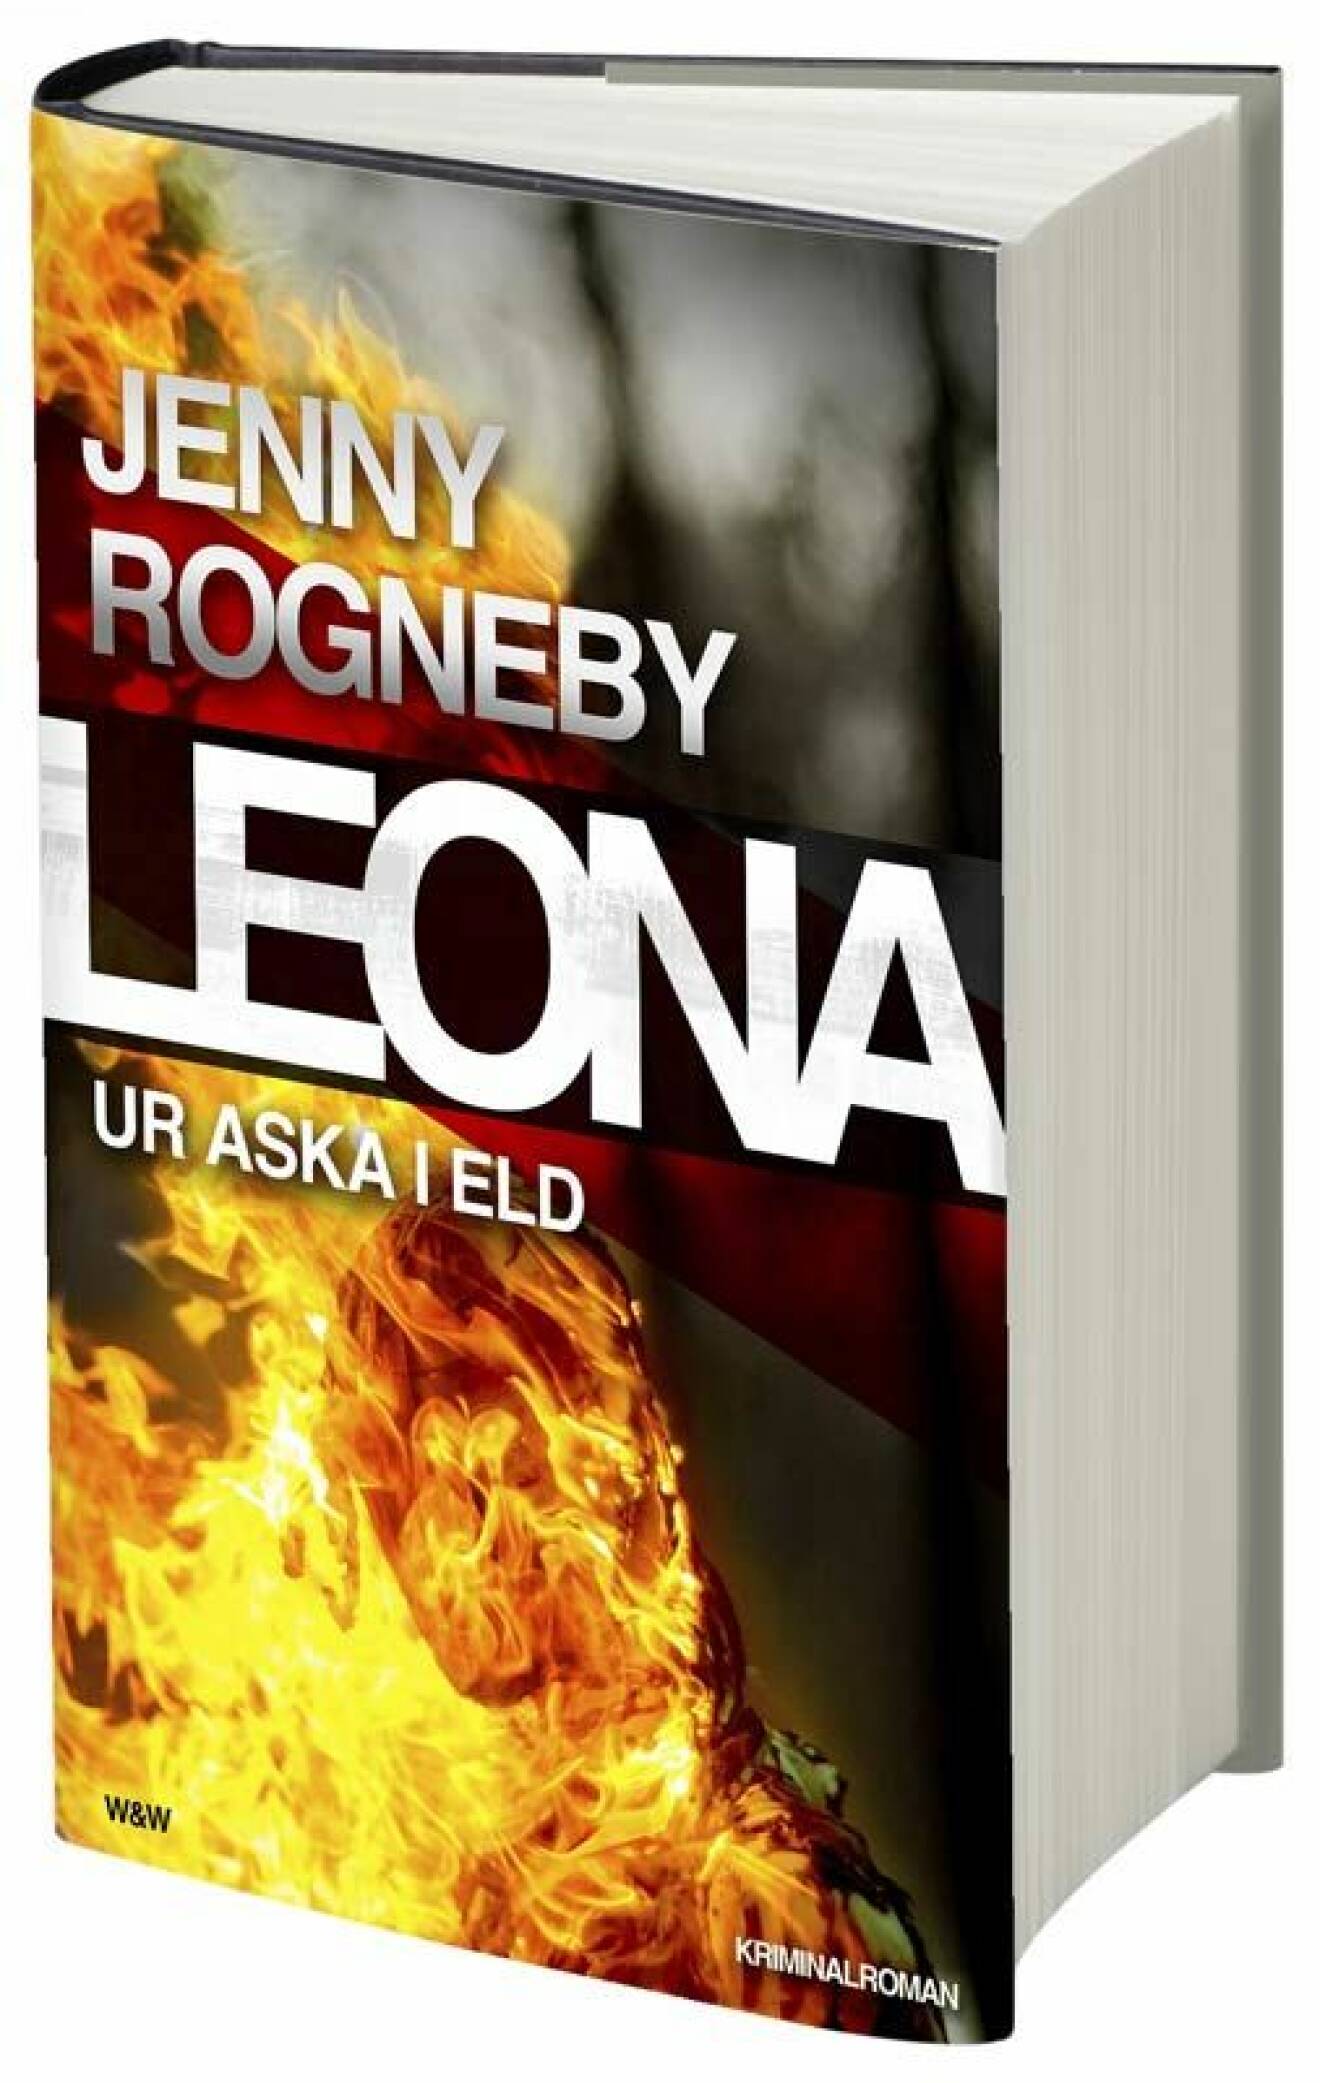 Den pinfärska boken "Ur aska i eld" är hennes fjärde i serien om brottsutredaren Leona.